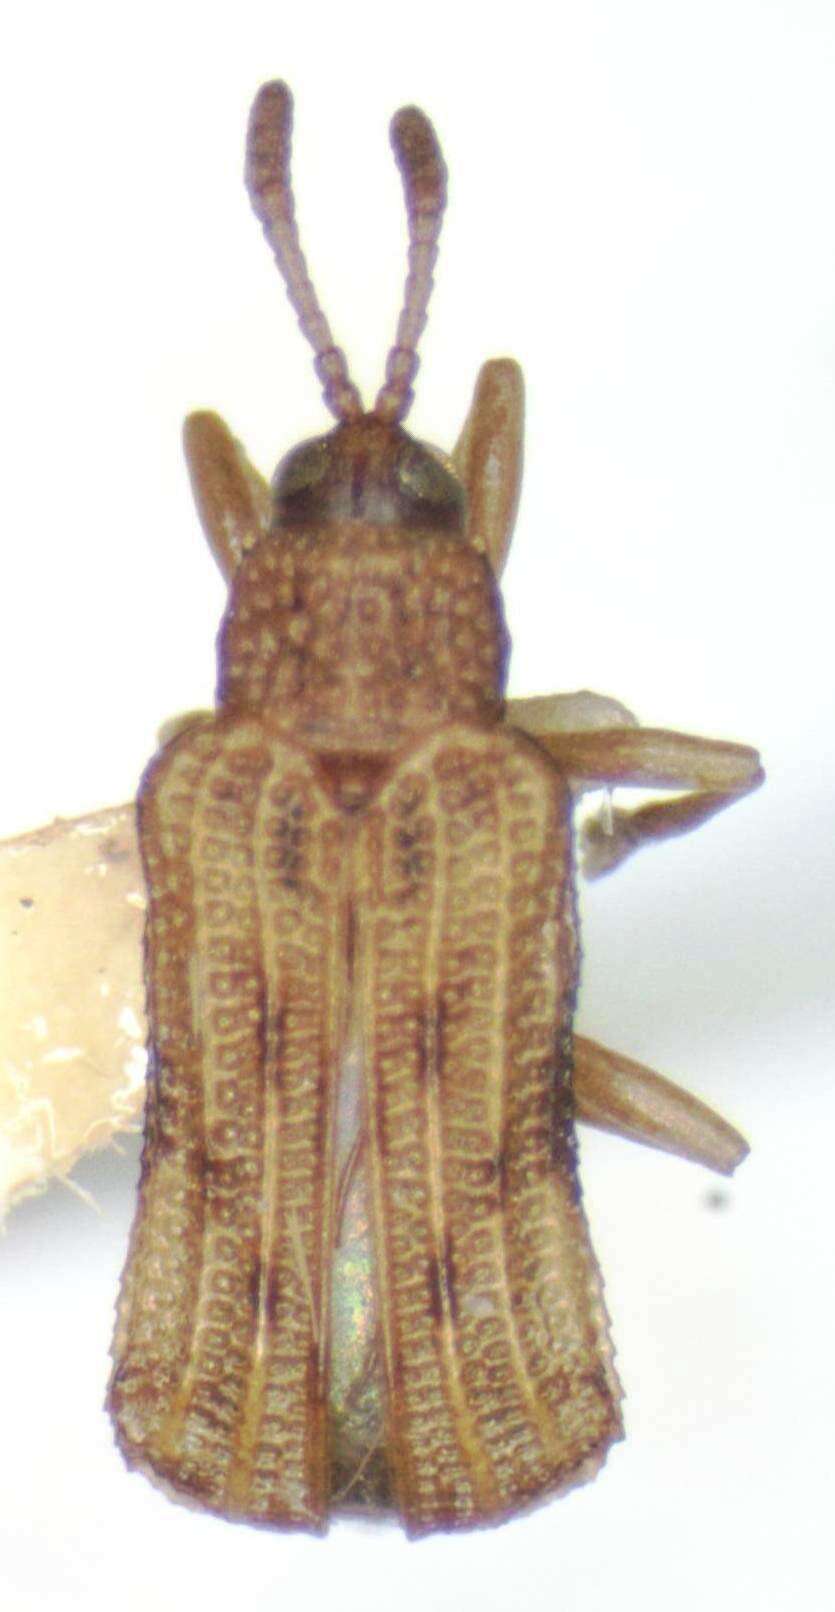 Image of Sumitrosis fryi (Baly 1885)